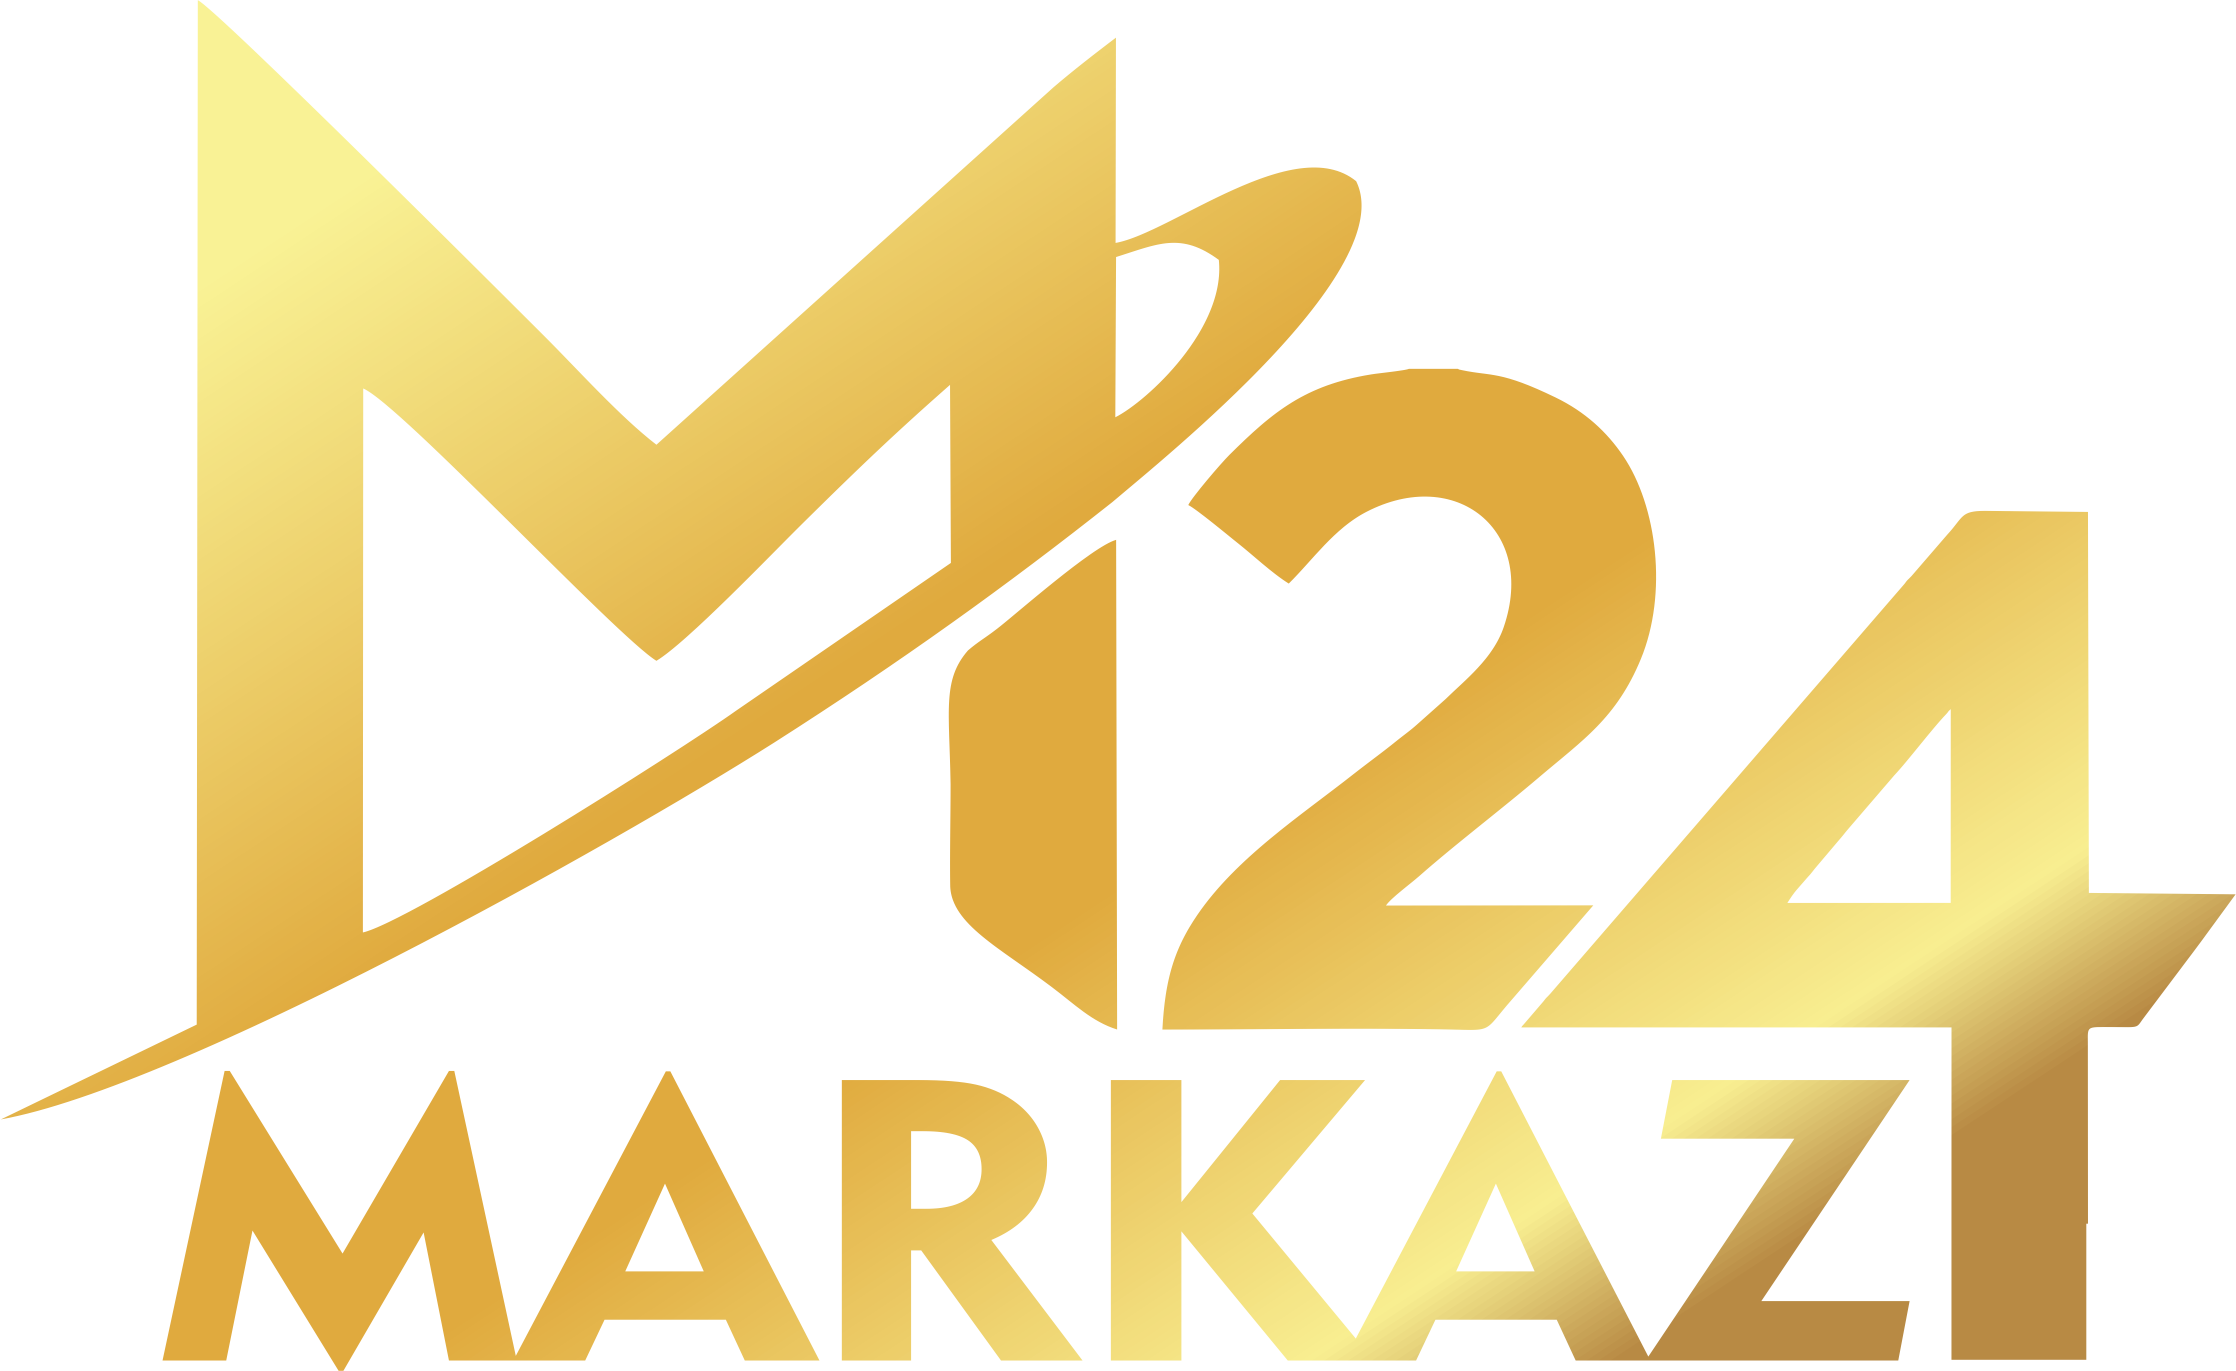 Markaz24.uz